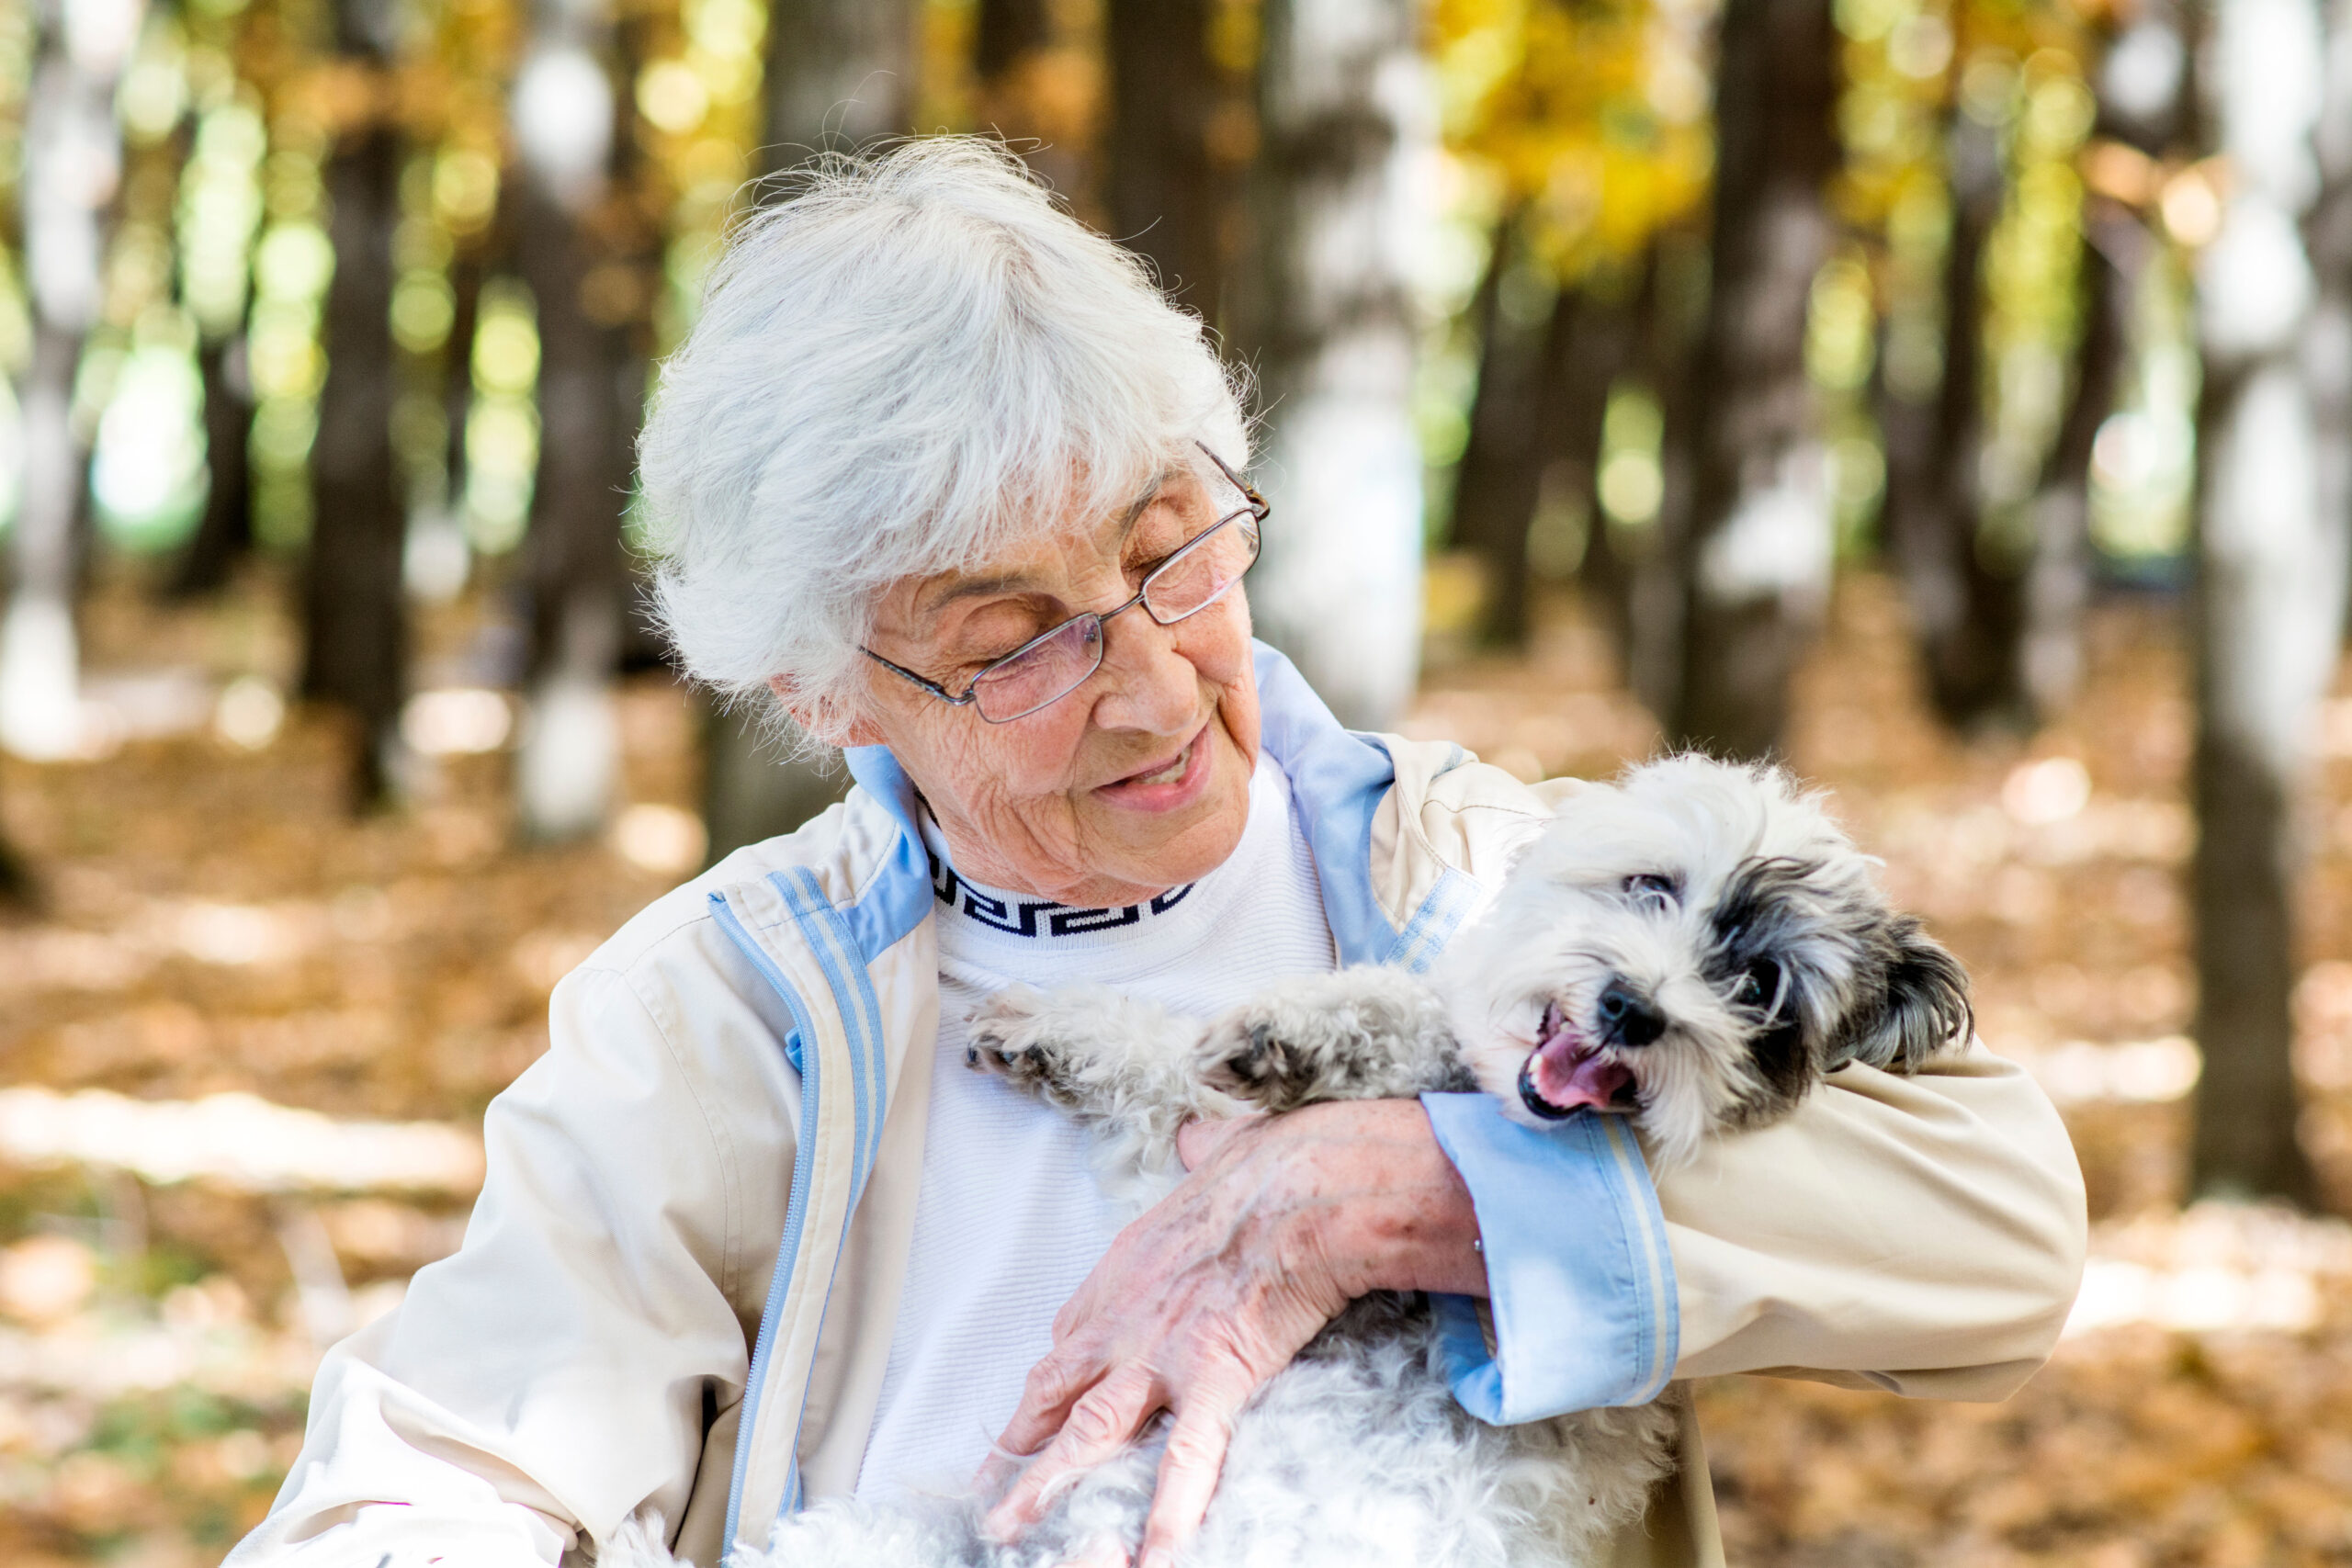 Los perros ayudan a las personas mayores en su función cognitiva e interacción social